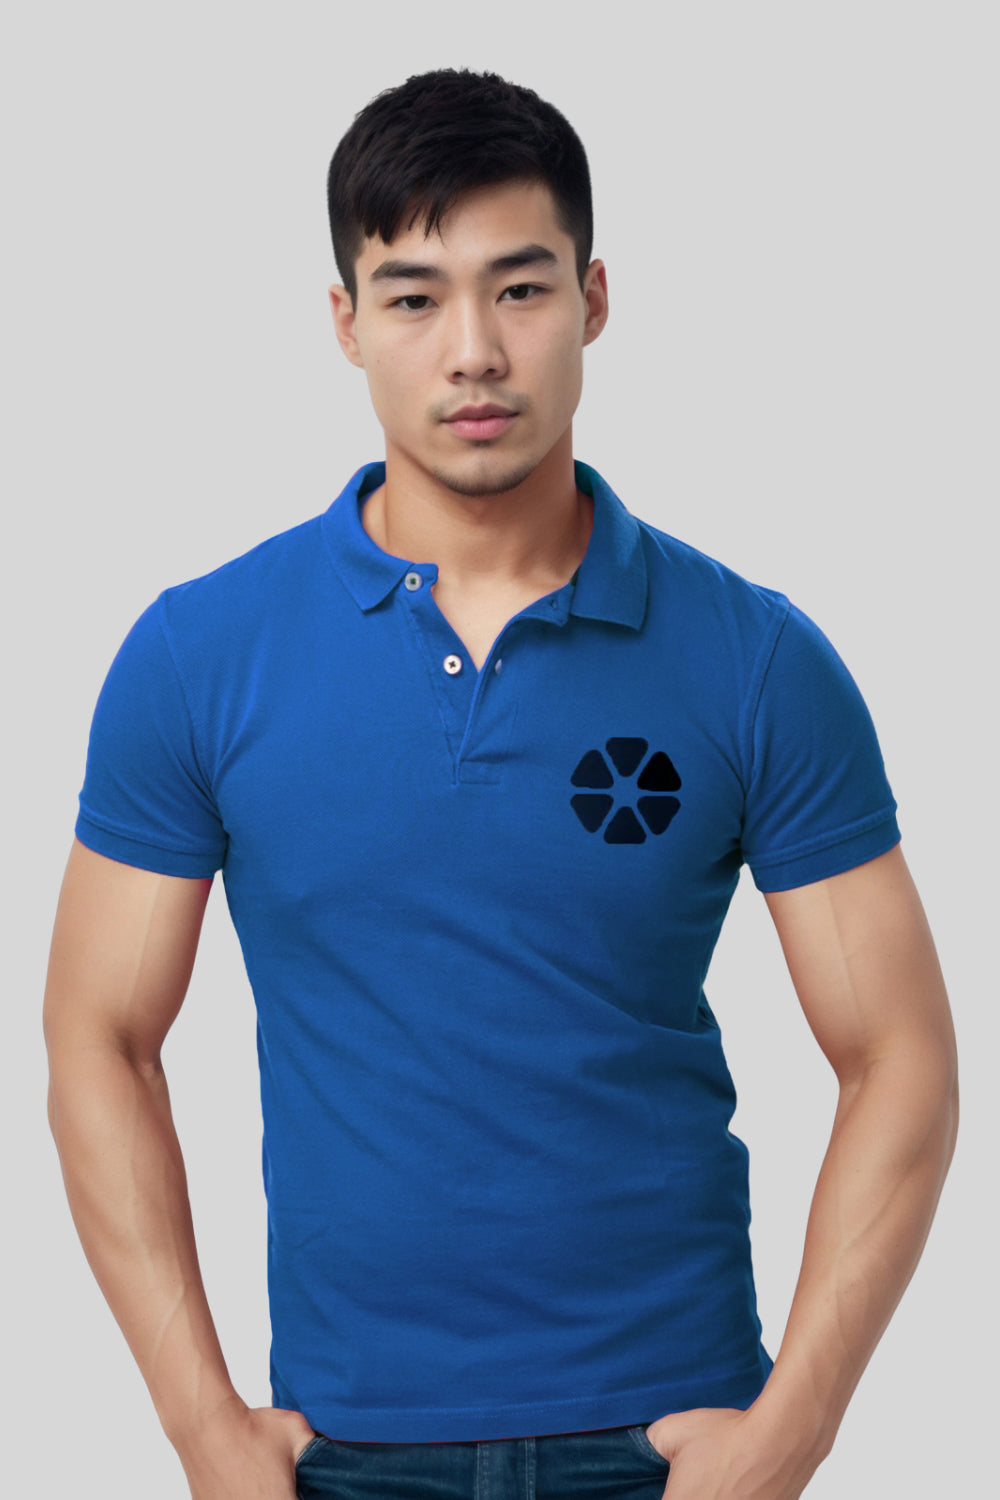 Flower Pocket Printed Blue Polo Tshirt